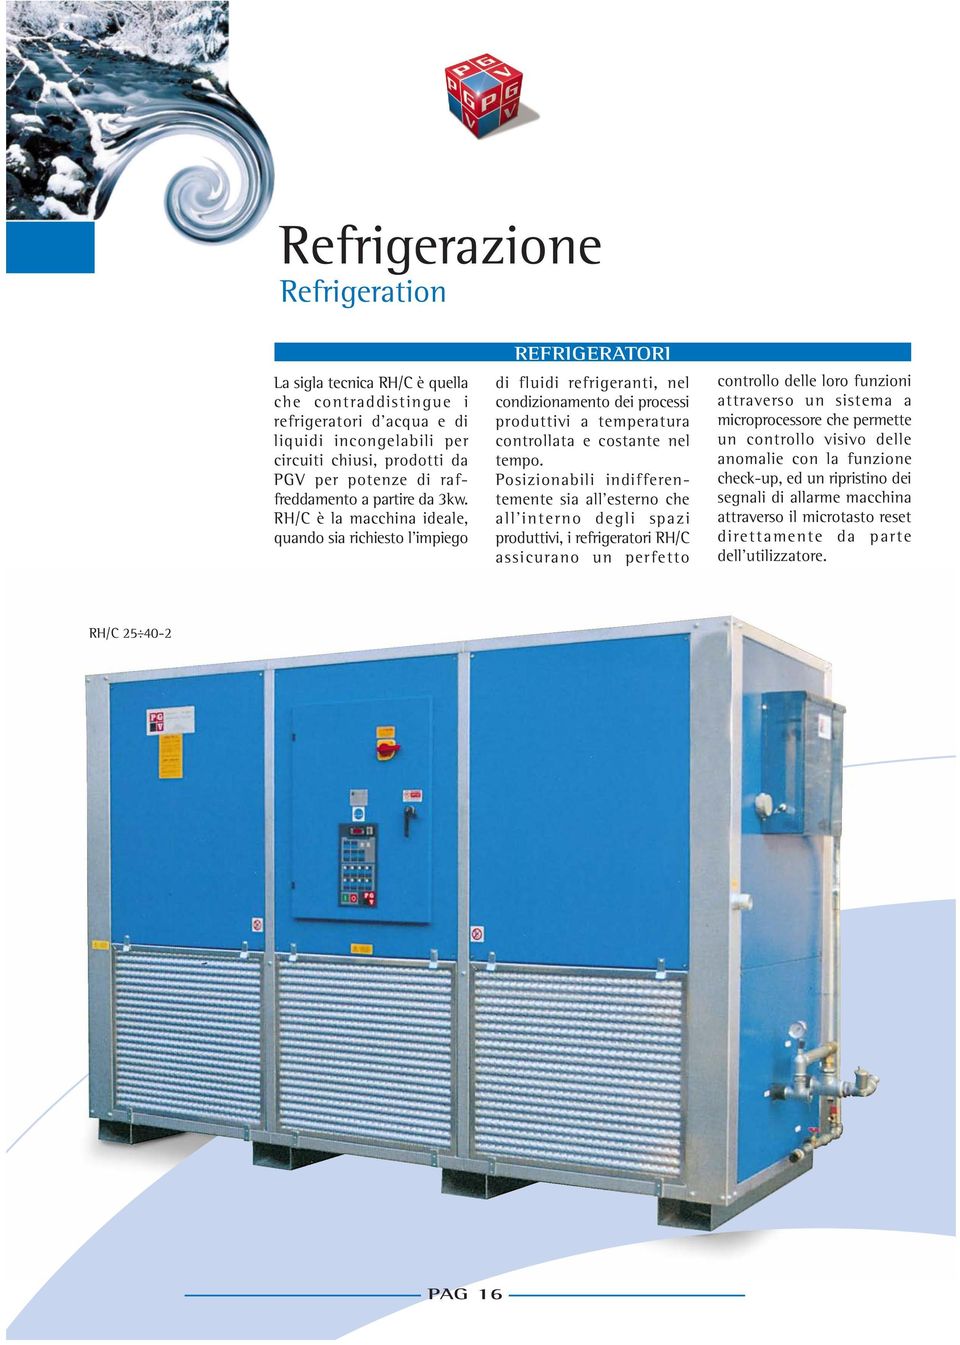 R/C è la macchina ideale, quando sia richiesto l impiego REFRIGERATORI di fluidi refrigeranti, nel condizionamento dei processi produttivi a temperatura controllata e costante nel tempo.